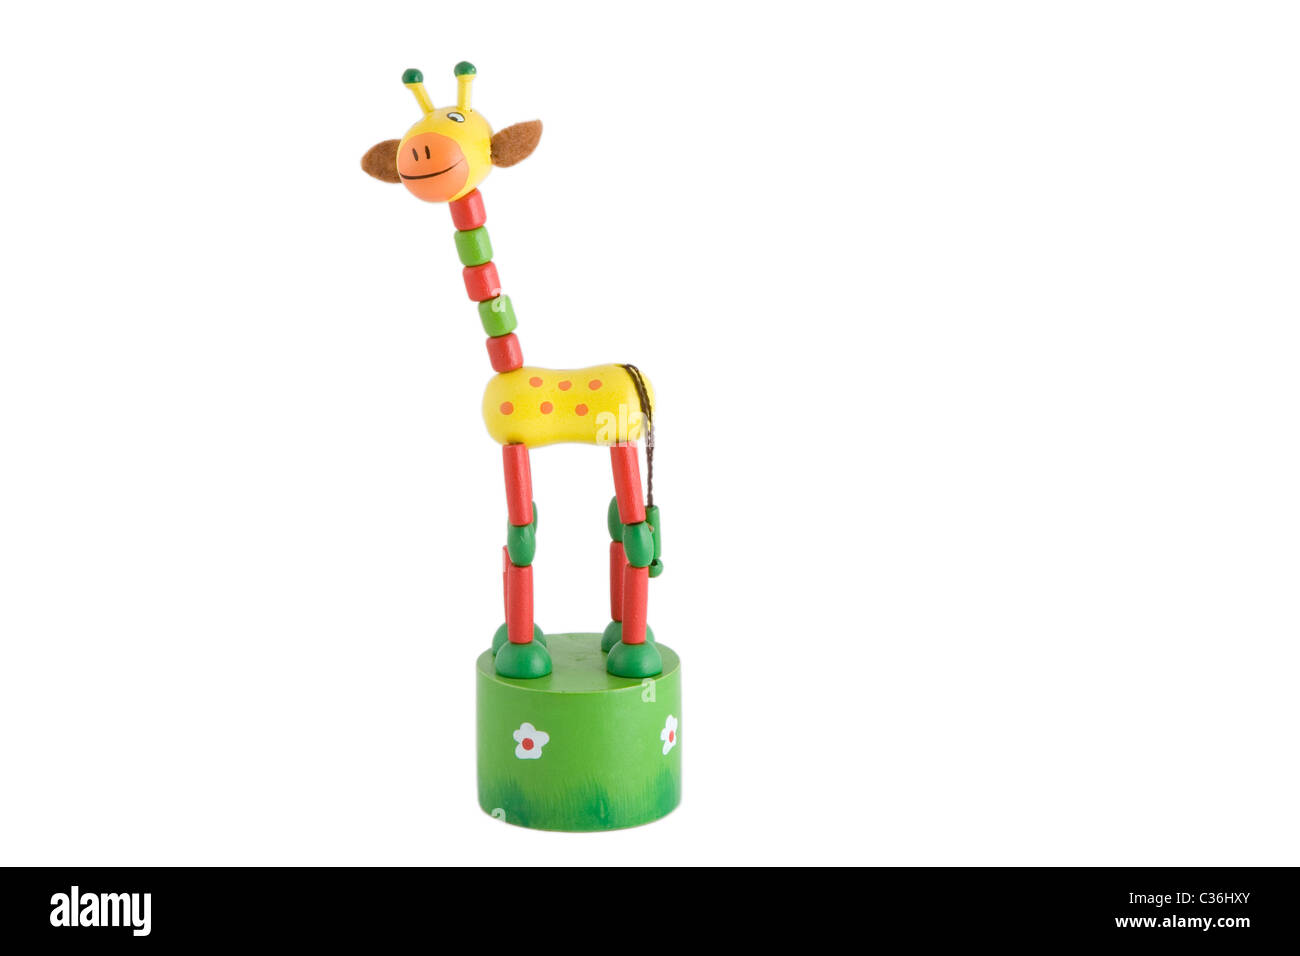 Vista anteriore del giocattolo di legno colorati, giraffe Foto Stock